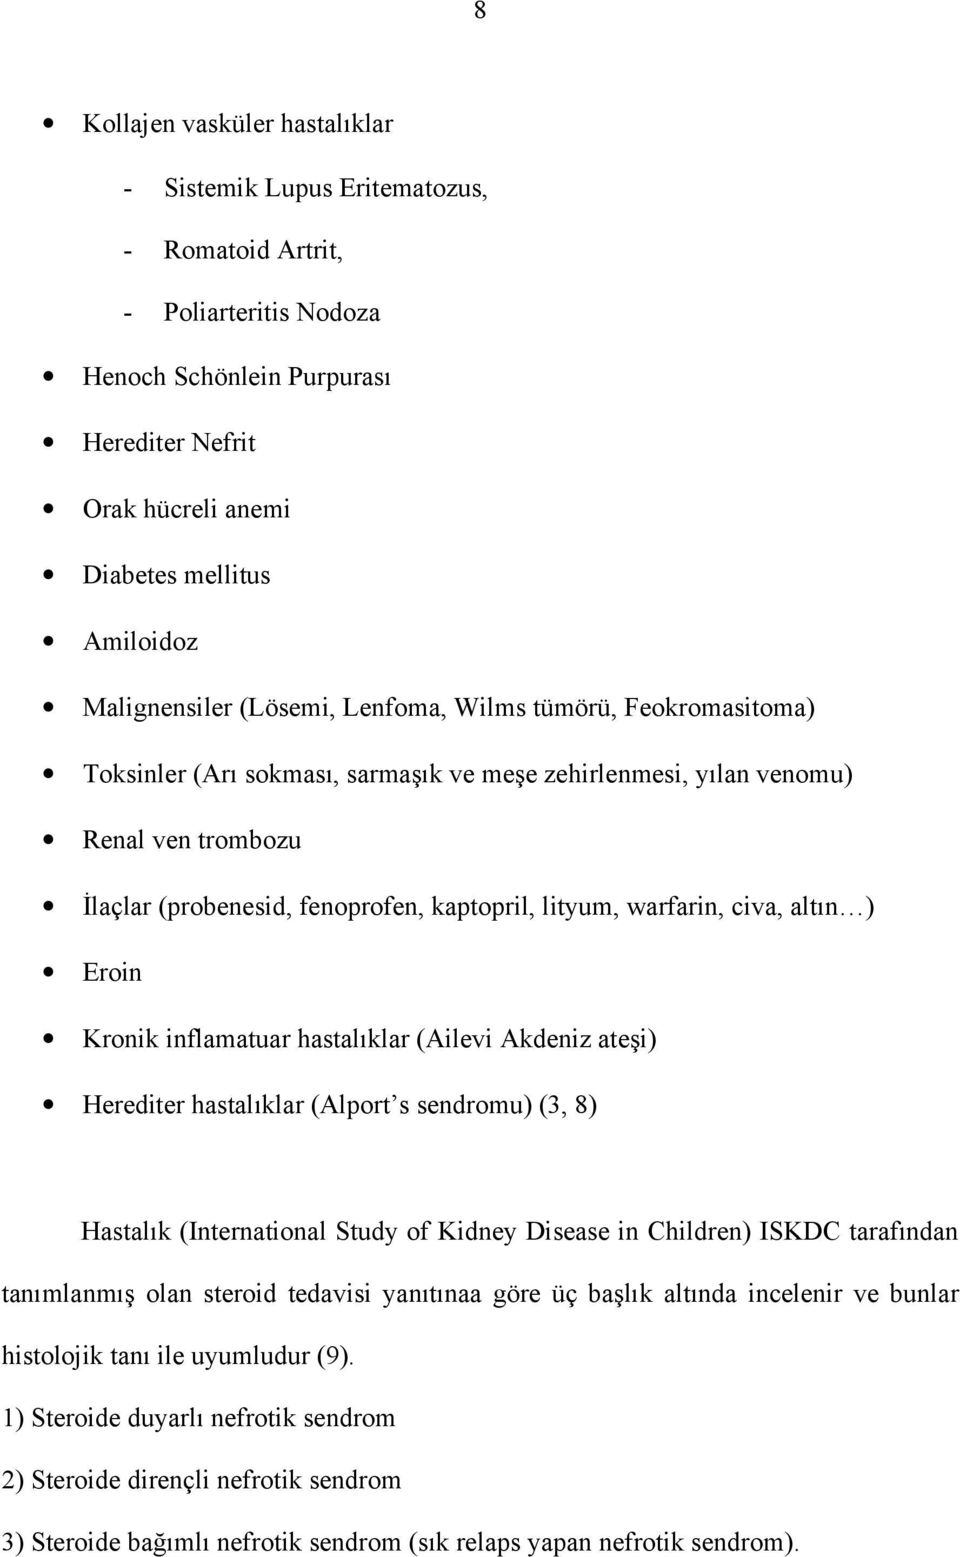 lityum, warfarin, civa, altın ) Eroin Kronik inflamatuar hastalıklar (Ailevi Akdeniz ateşi) Herediter hastalıklar (Alport s sendromu) (3, 8) Hastalık (International Study of Kidney Disease in